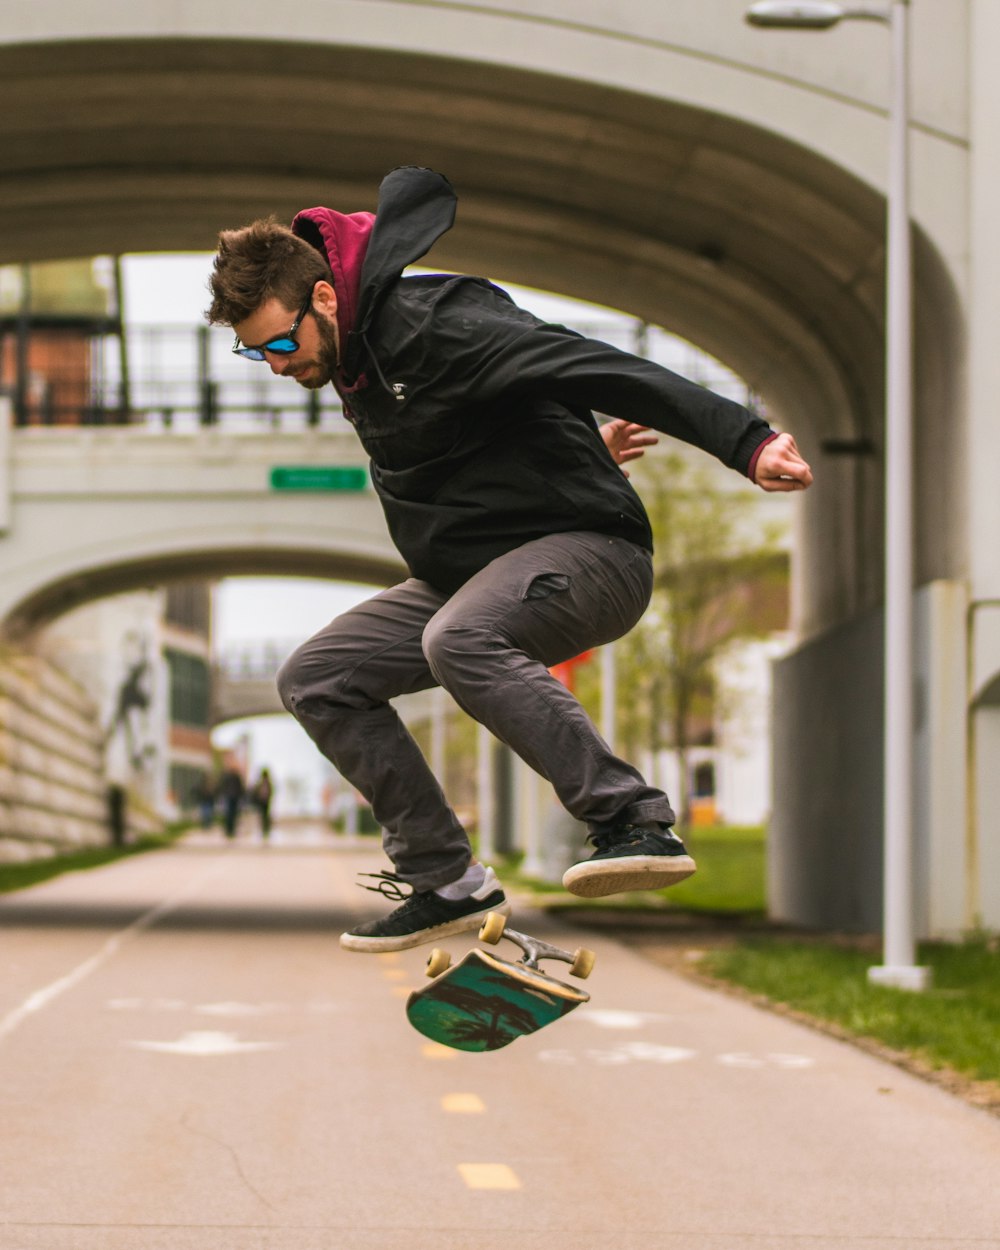 Mann macht Trick auf dem Skateboard